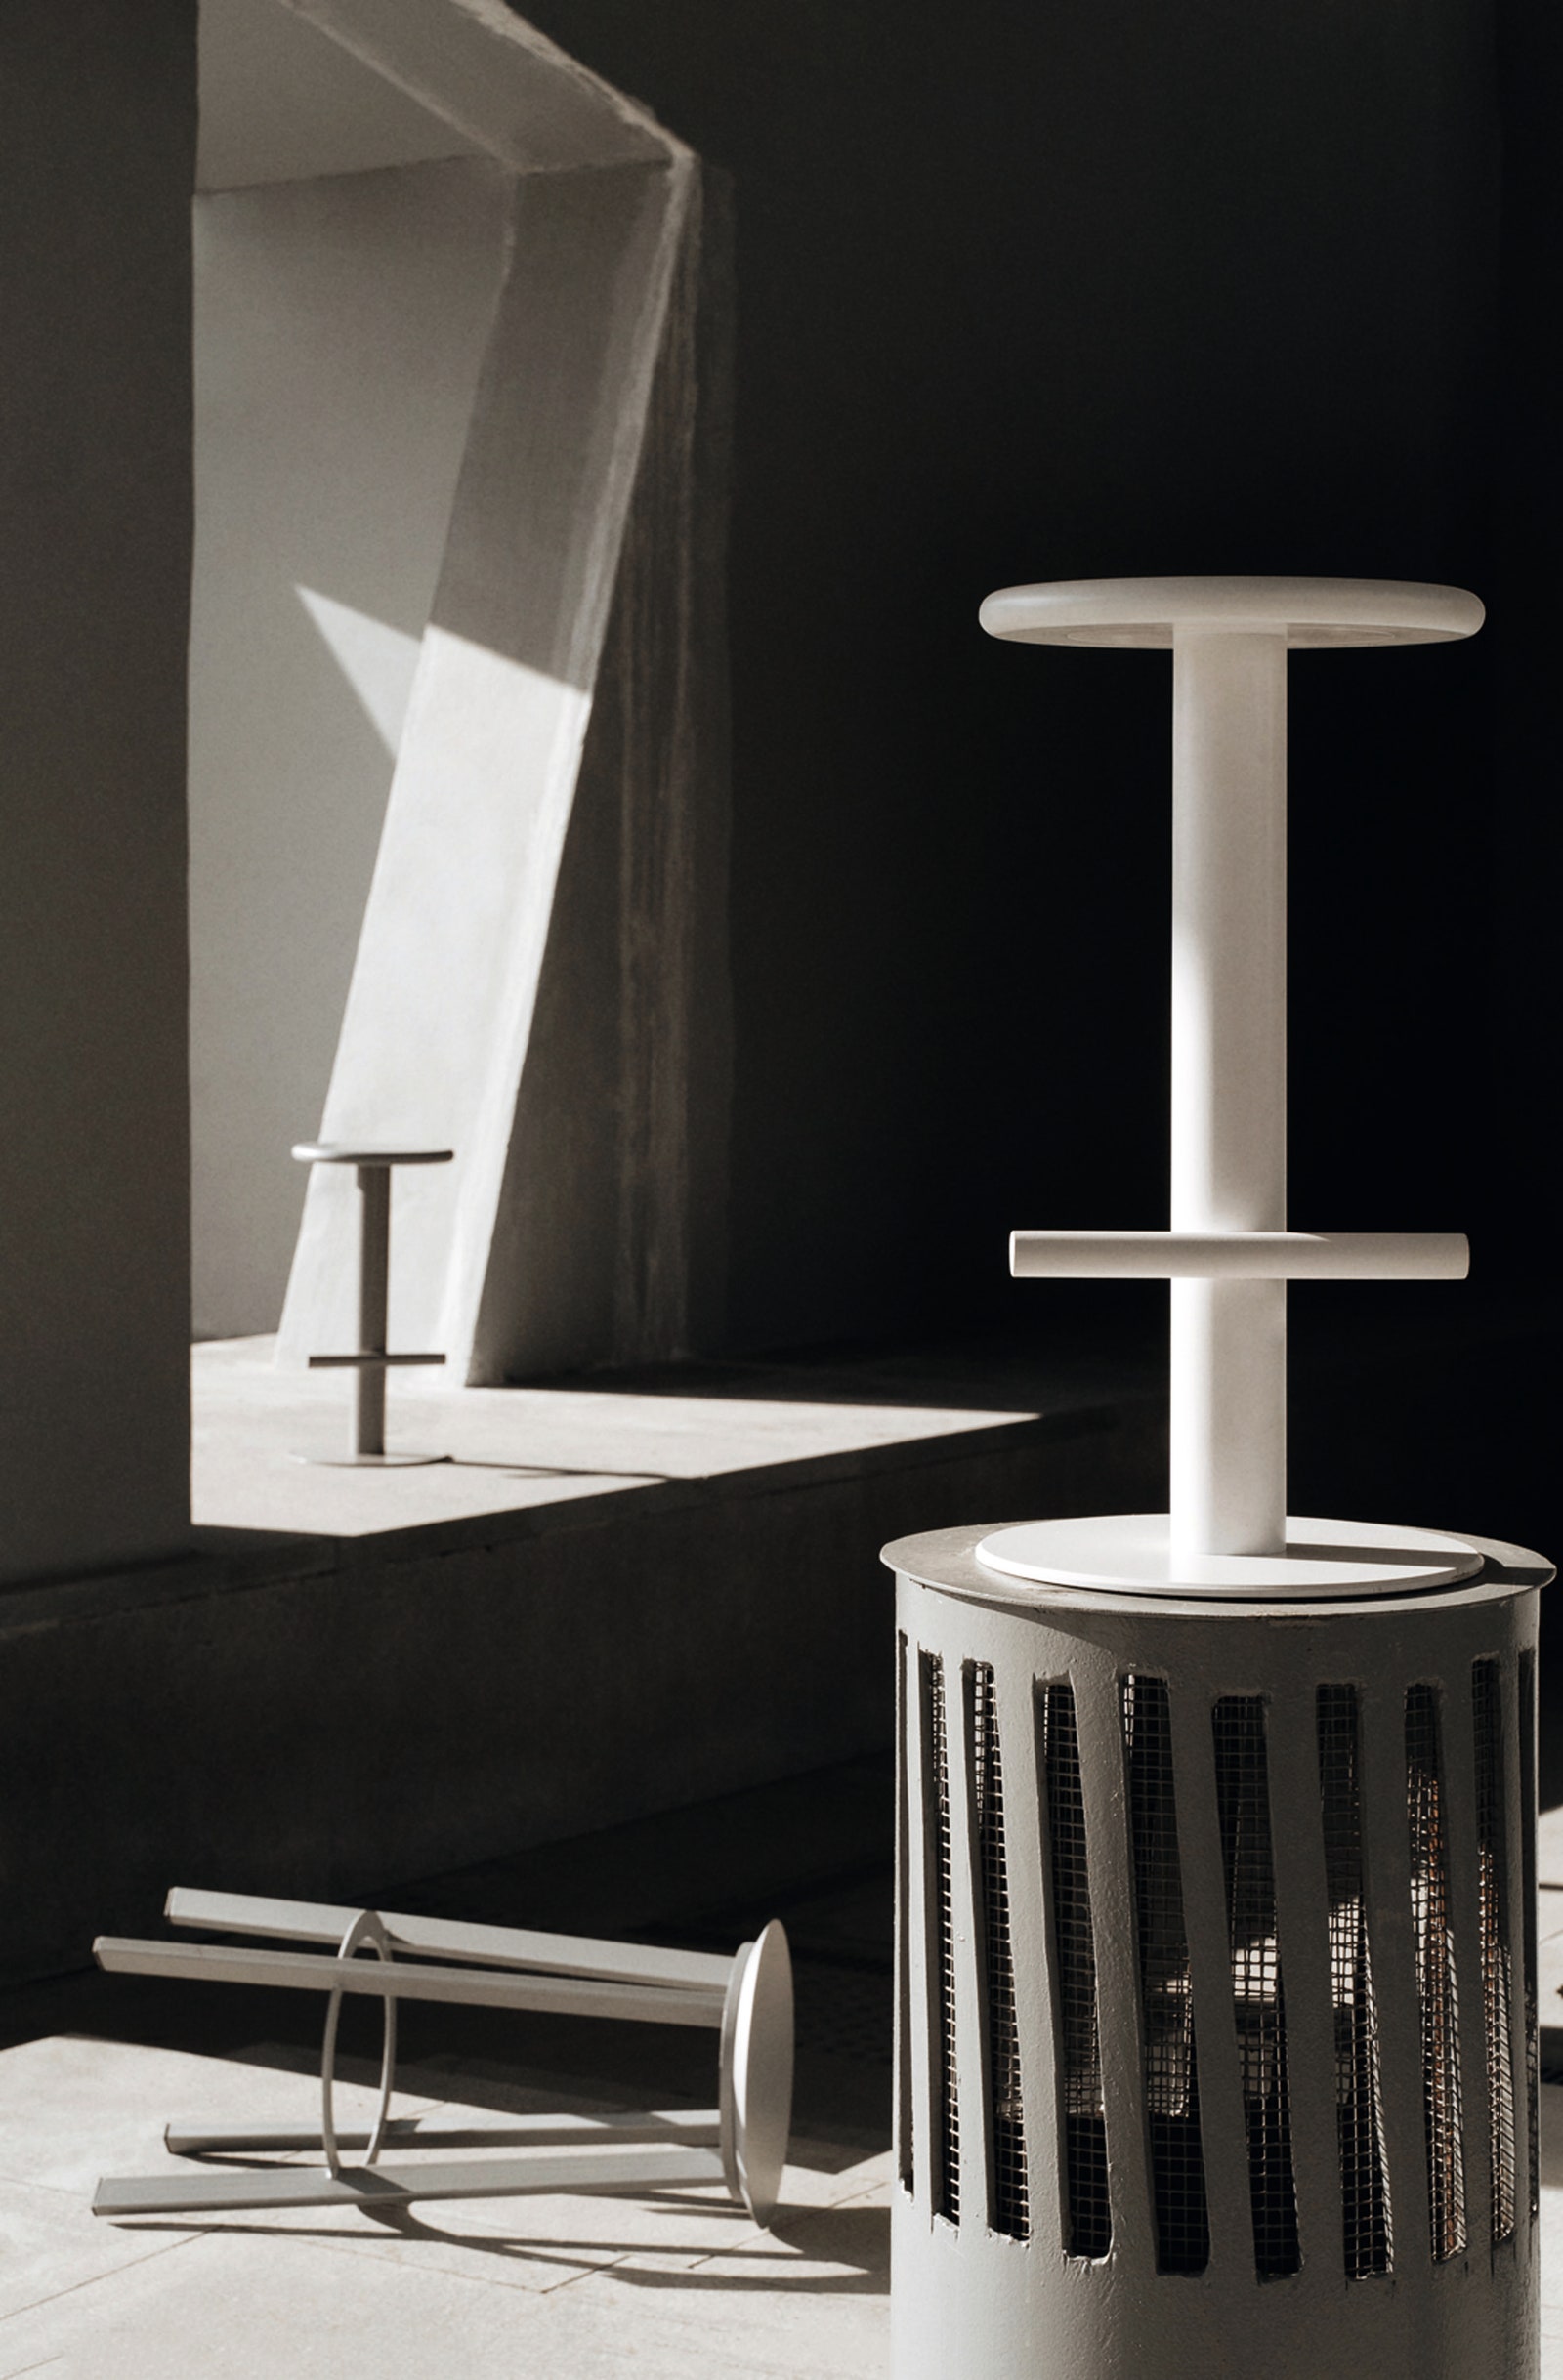 Мебель бренда ALot предназначена для общественных интерьеров поэтому сделана из прочного металла.